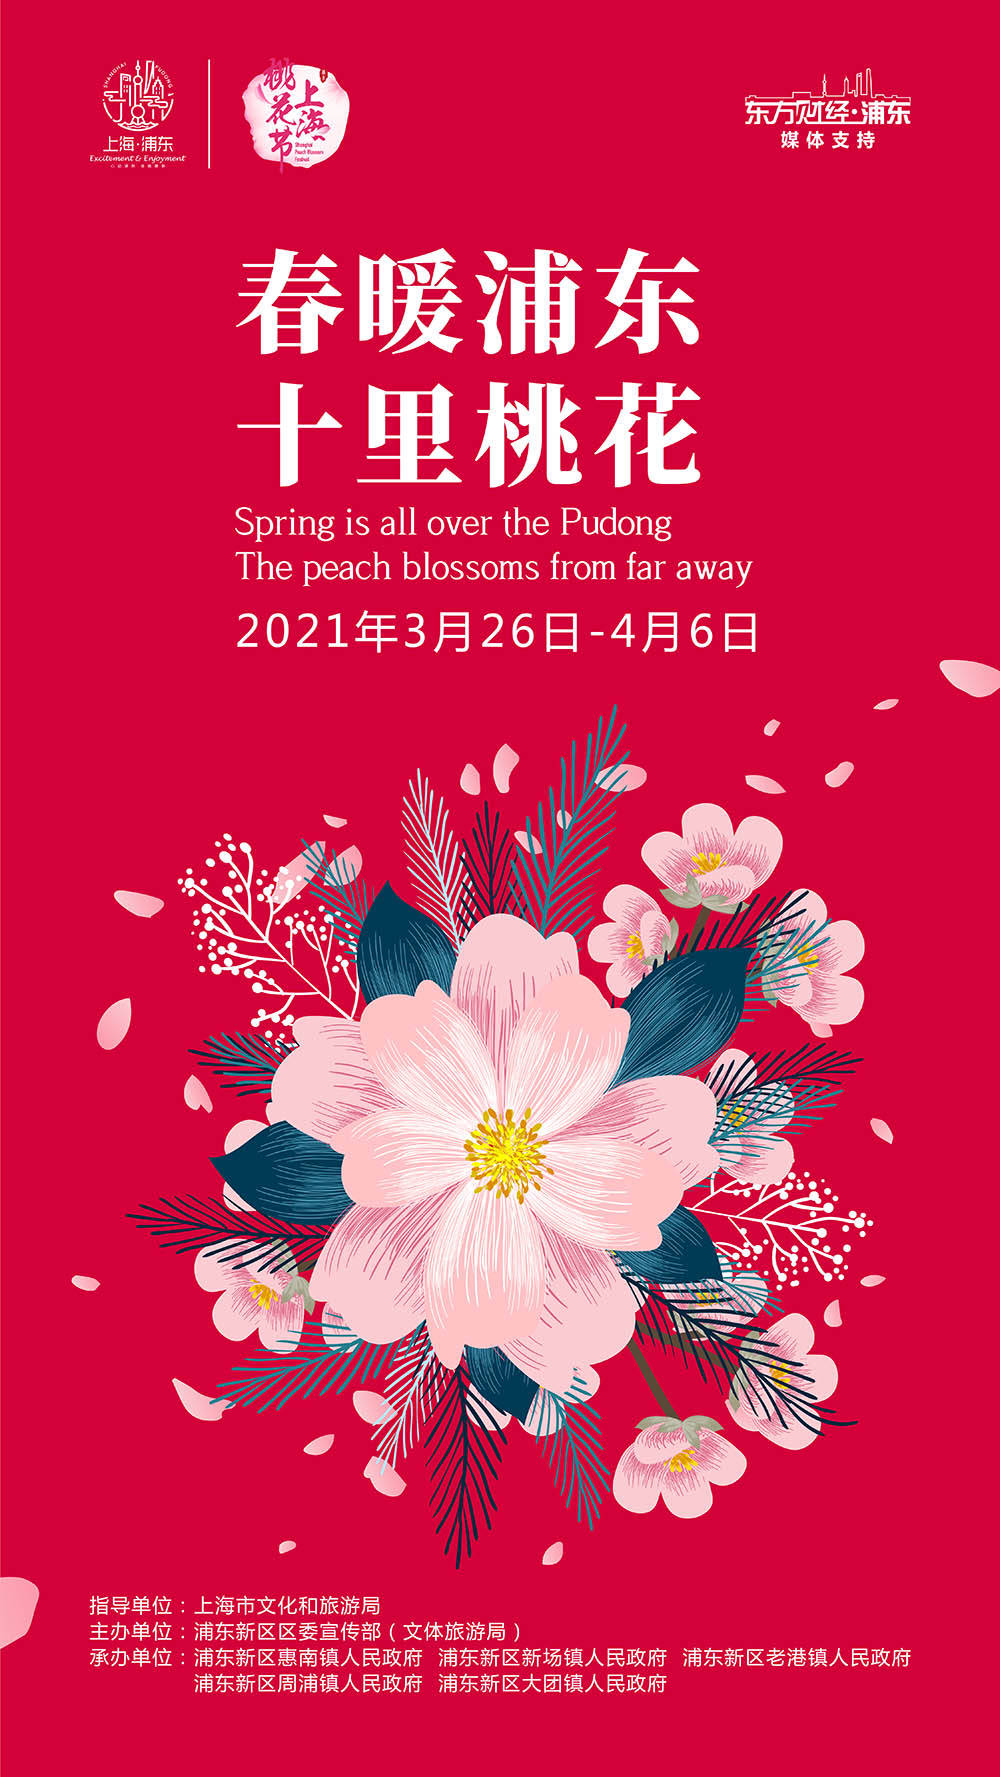 上海桃花节回归，穿越五条赏花线路感受“向往的生活”